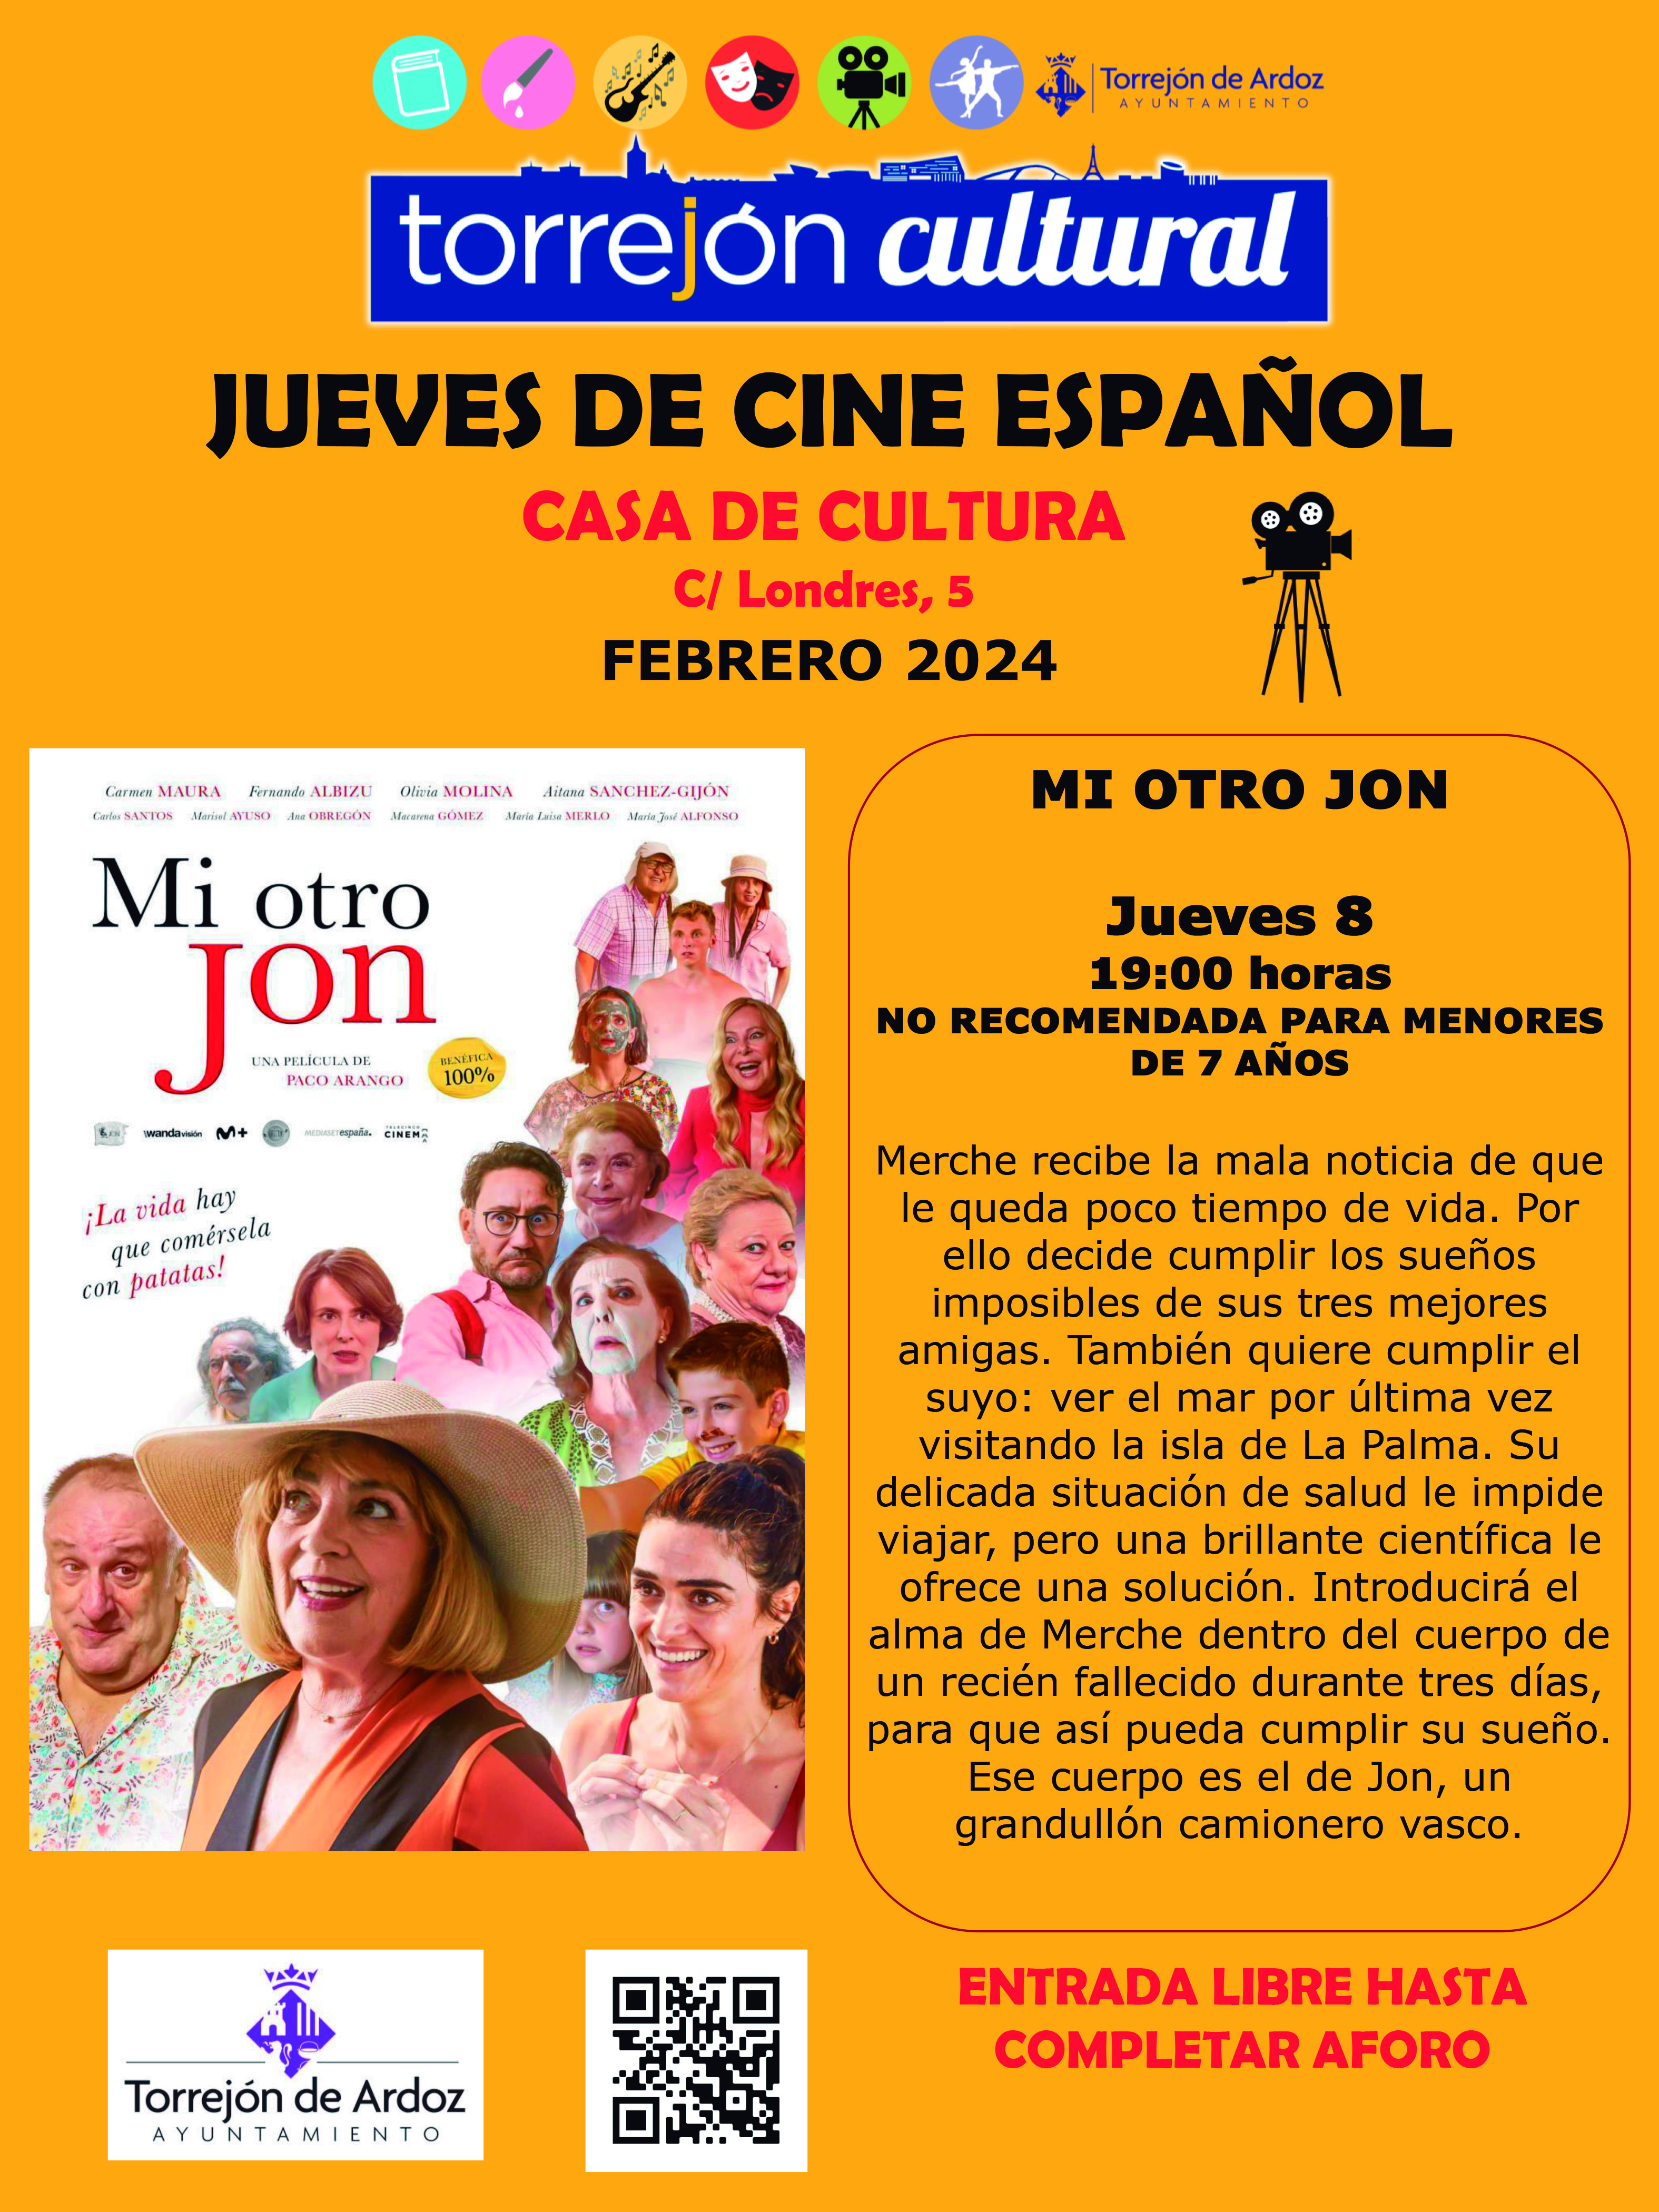 Jueves de Cine Español - Mi otro Jon